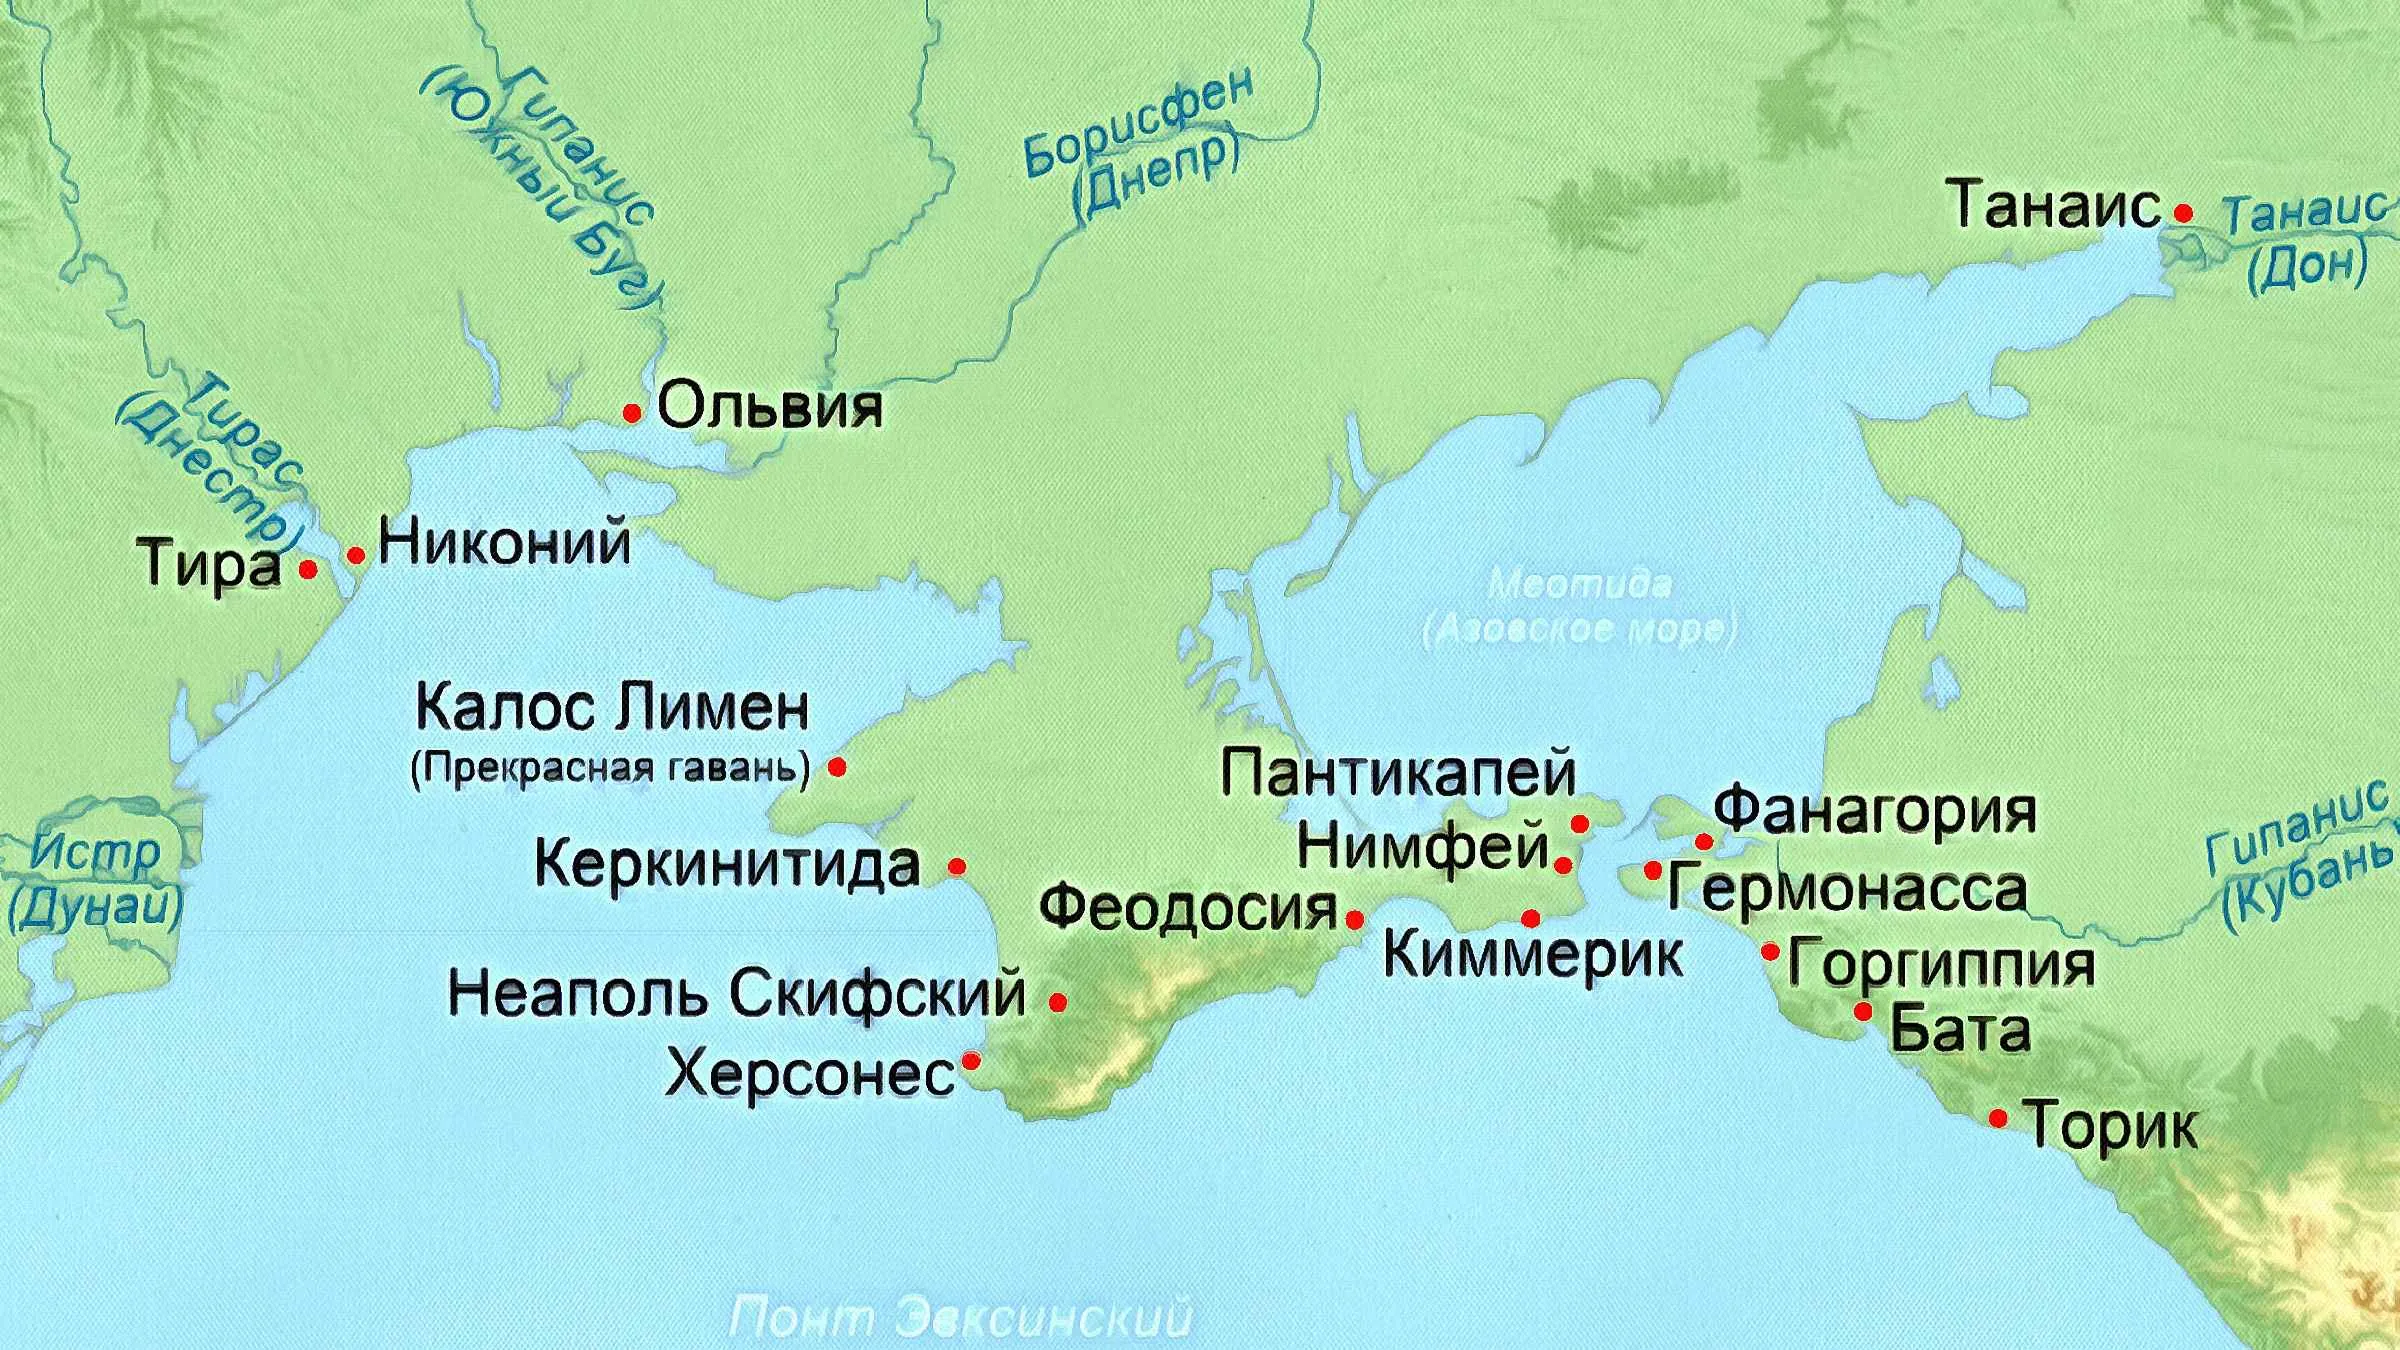 Какие города государства существуют. Города Ольвия Пантикапей Херсонес на карте. Боспорское царство Пантикапей. Колонии древней Греции на черном море на карте. Фанагория Боспорское царство.